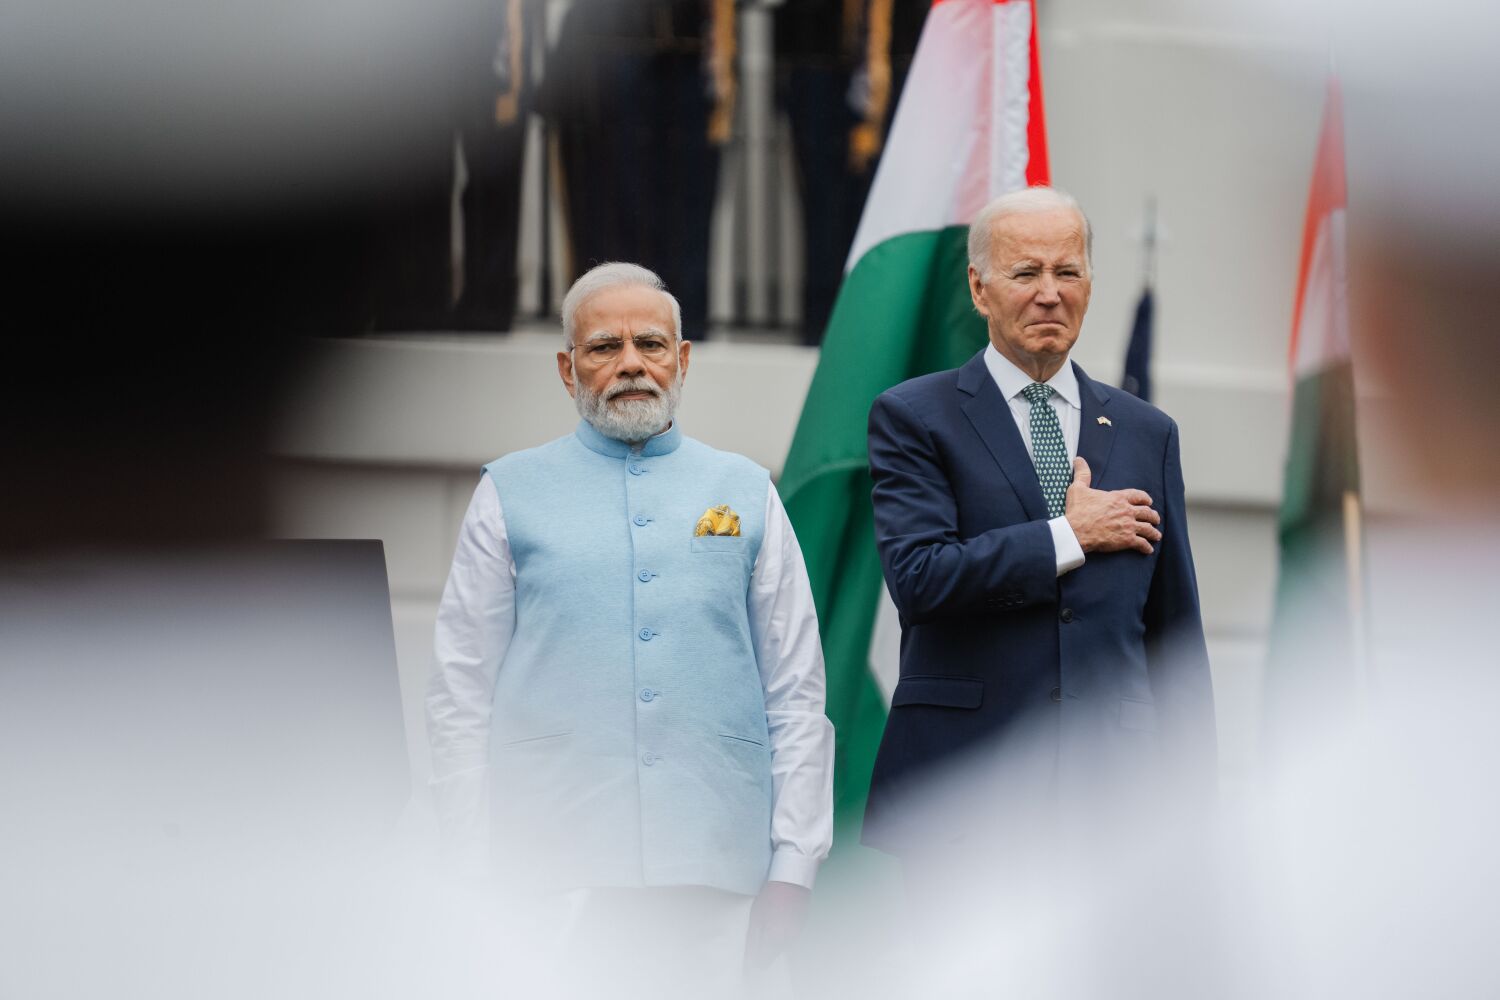 Hindistan lideri Modi'nin Beyaz Saray ziyaretiyle ilgili rahatsız edici gerçek